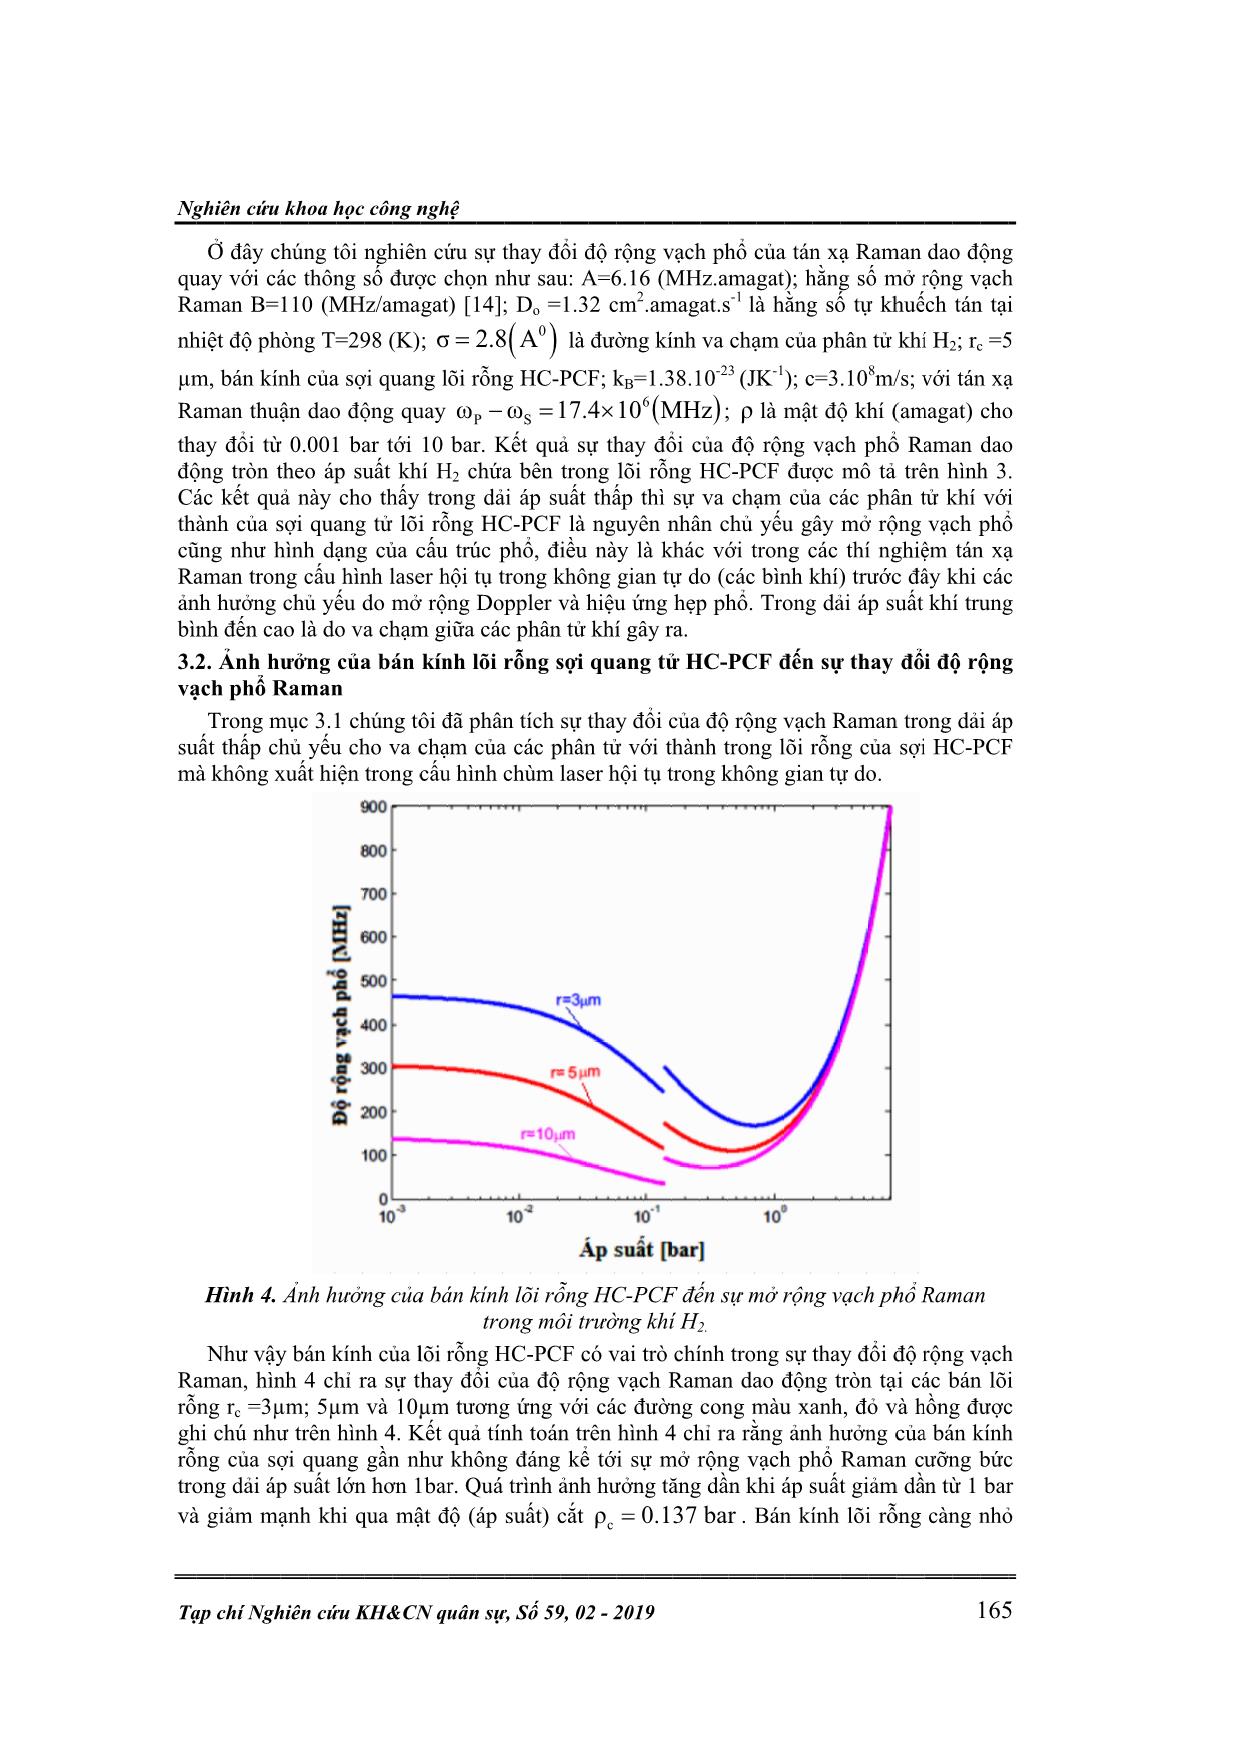 Nghiên cứu mở rộng vạch phổ Raman trong môi trường khí H2 chứa trong sợi quang tử lõi rỗng trang 5